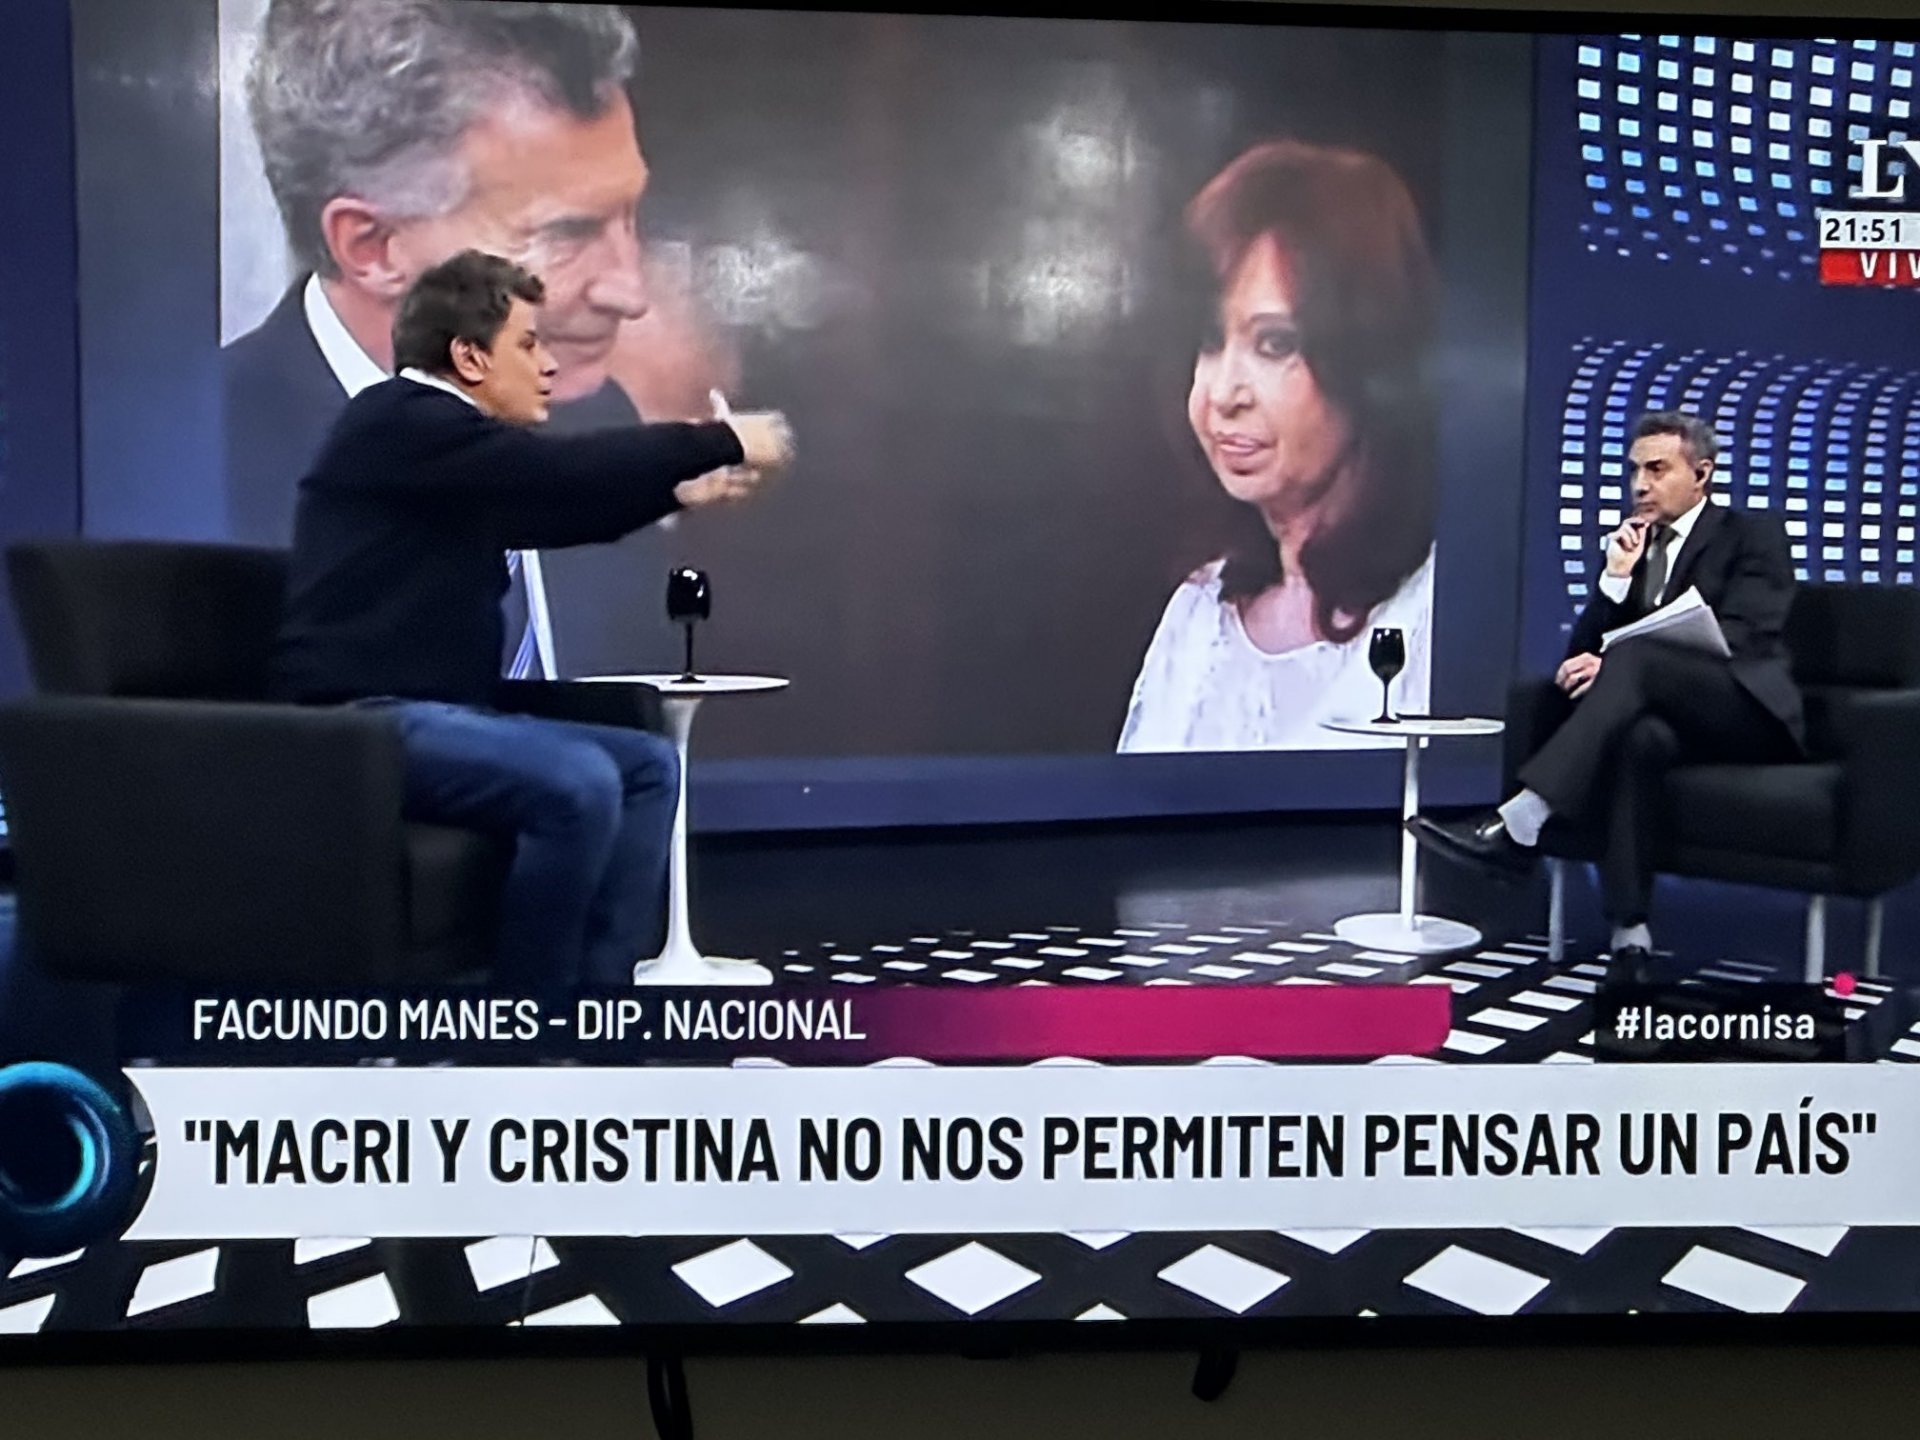 Críticas duras desde el Pro y vacío radical tras los dichos de Facundo Manes sobre Macri